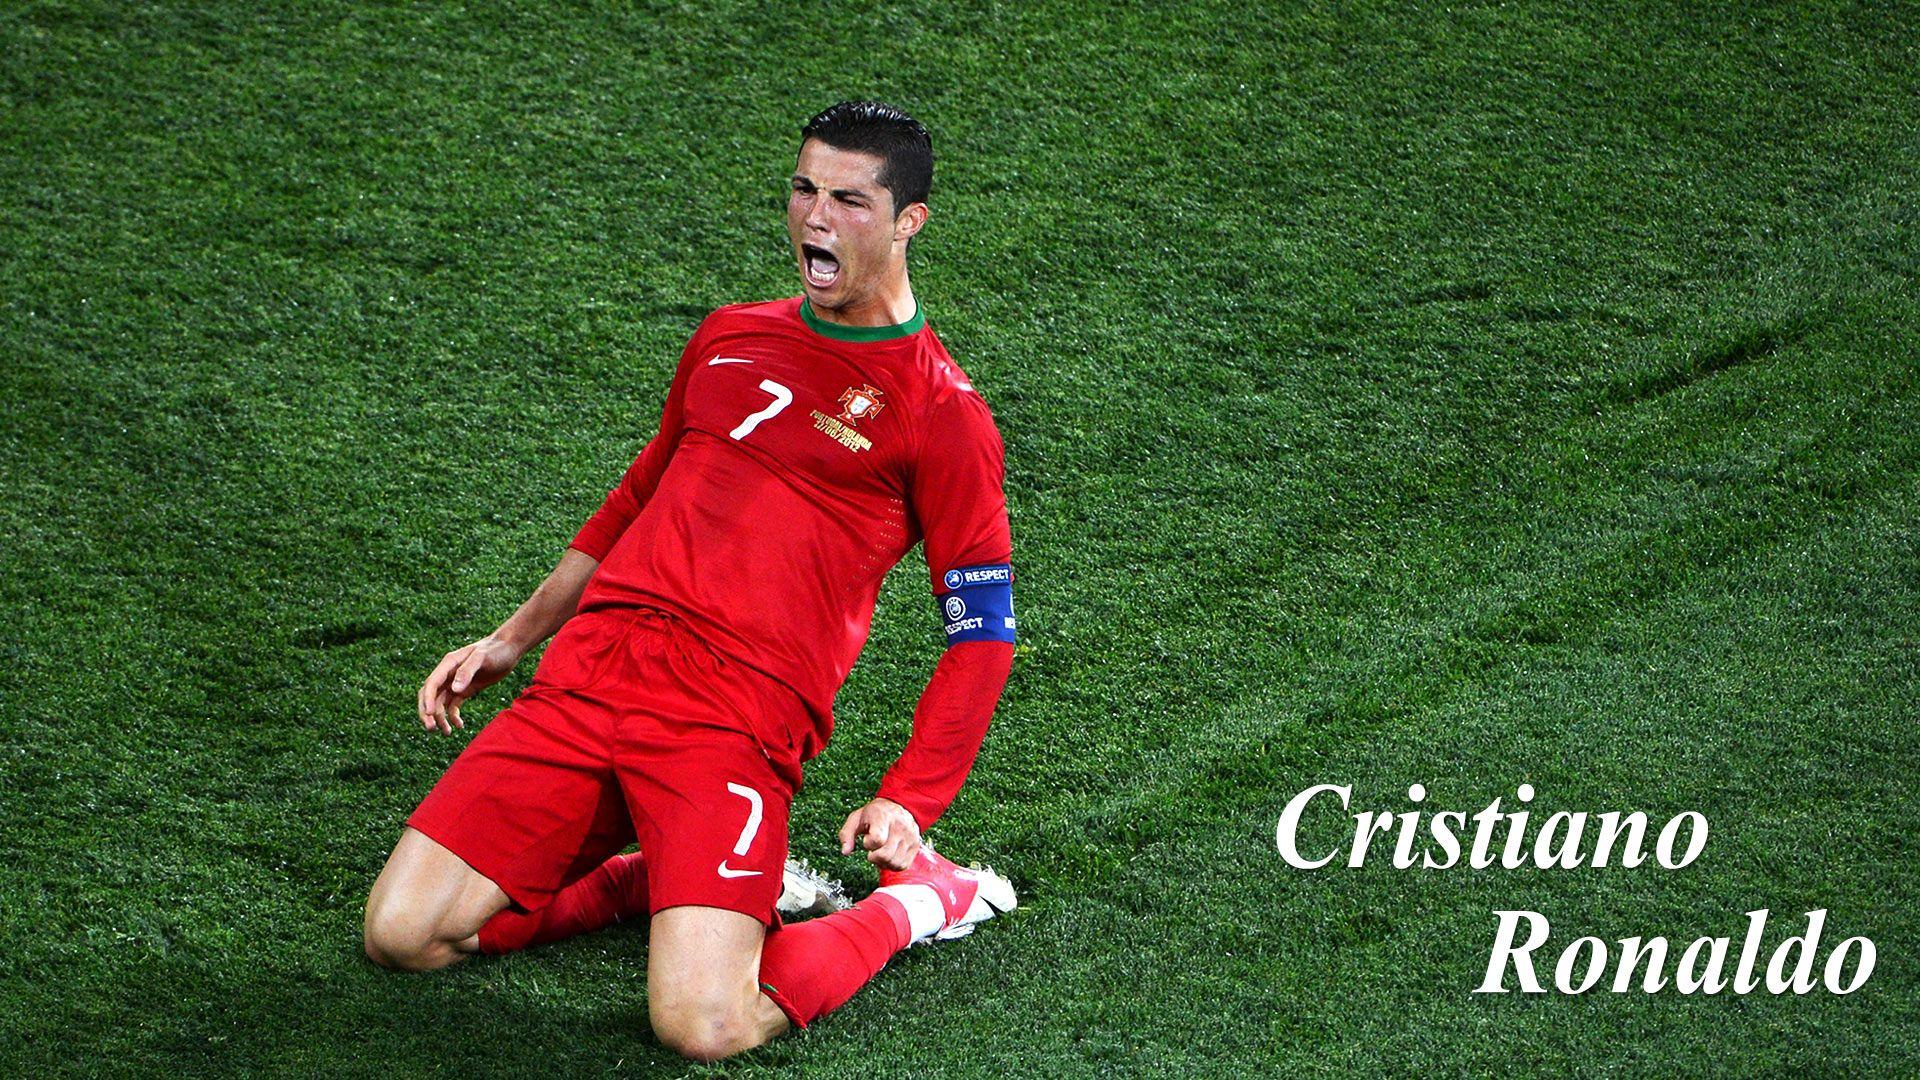 Cristiano Ronaldo Portugal Jersey Wallpaper In Red Wallpaper